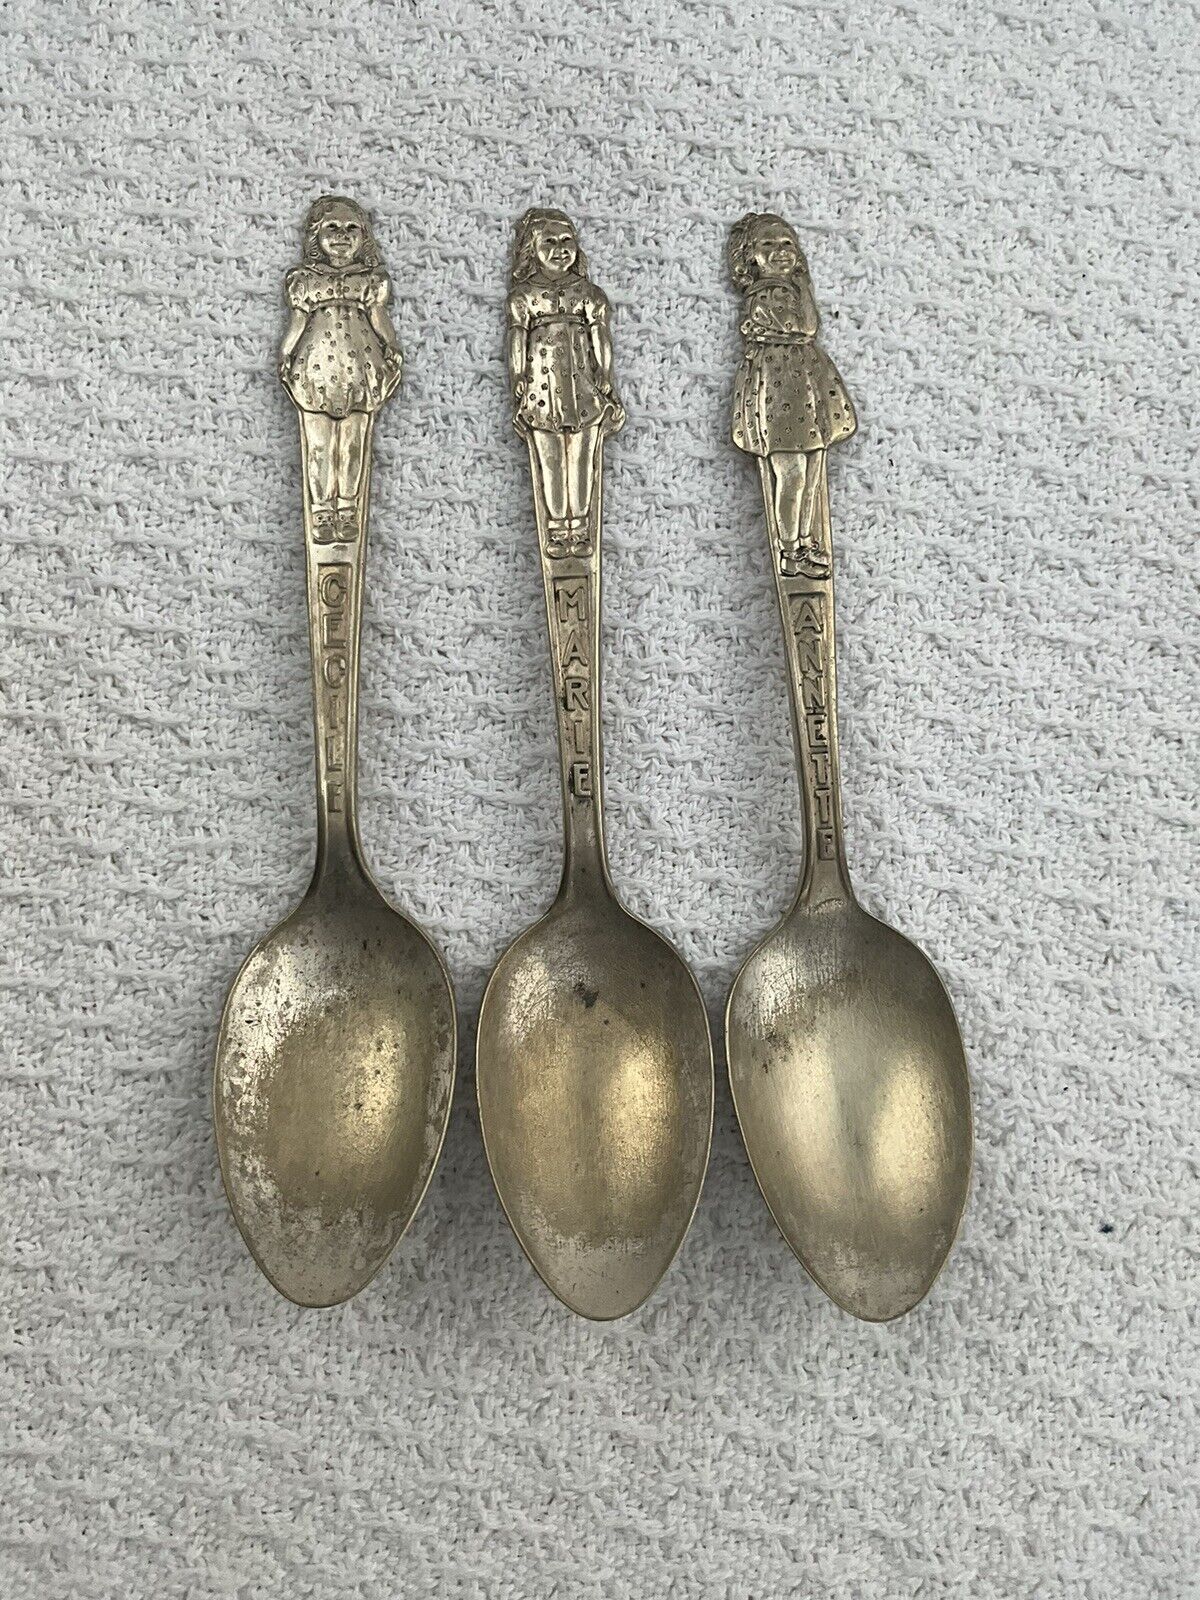 3 Vintage Dionne Quintuplets Spoons Marie Annette Cecile *Rough